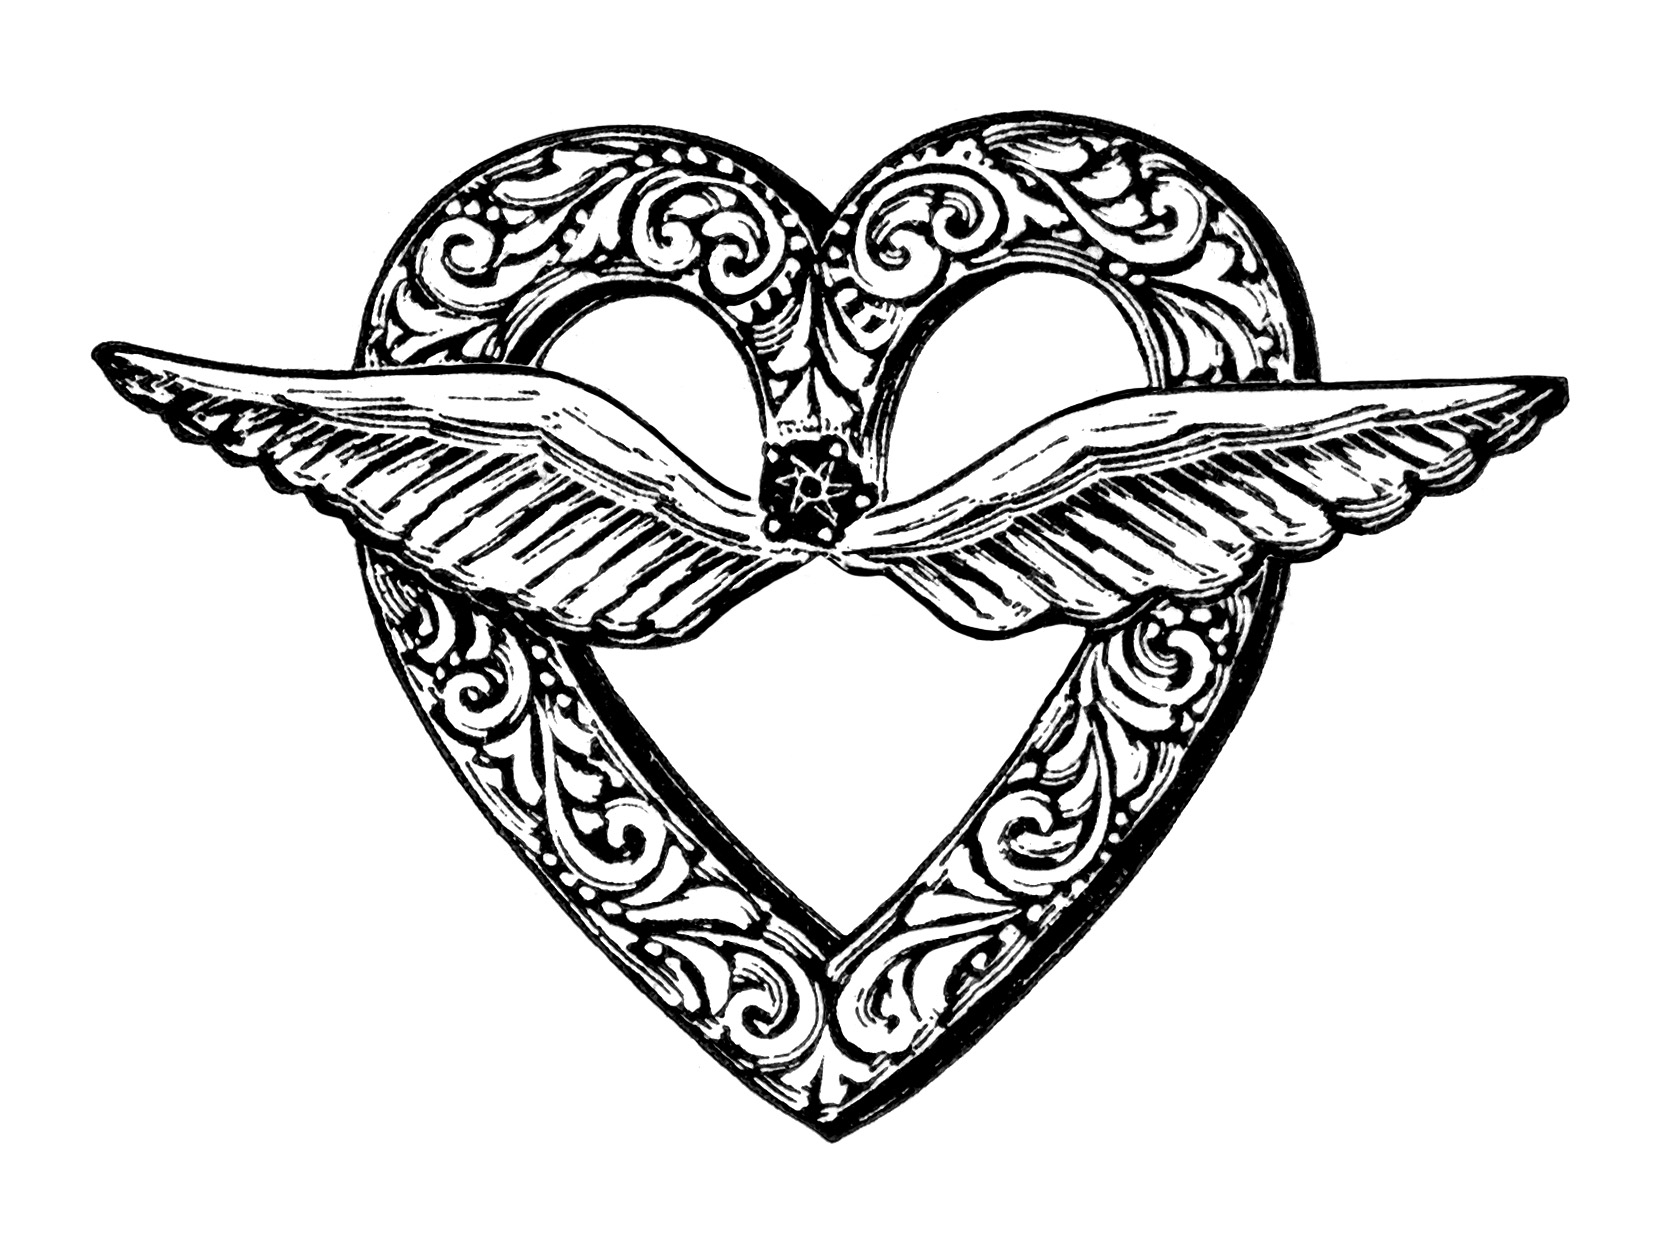 Heart Shaped Brooch Clip Art.